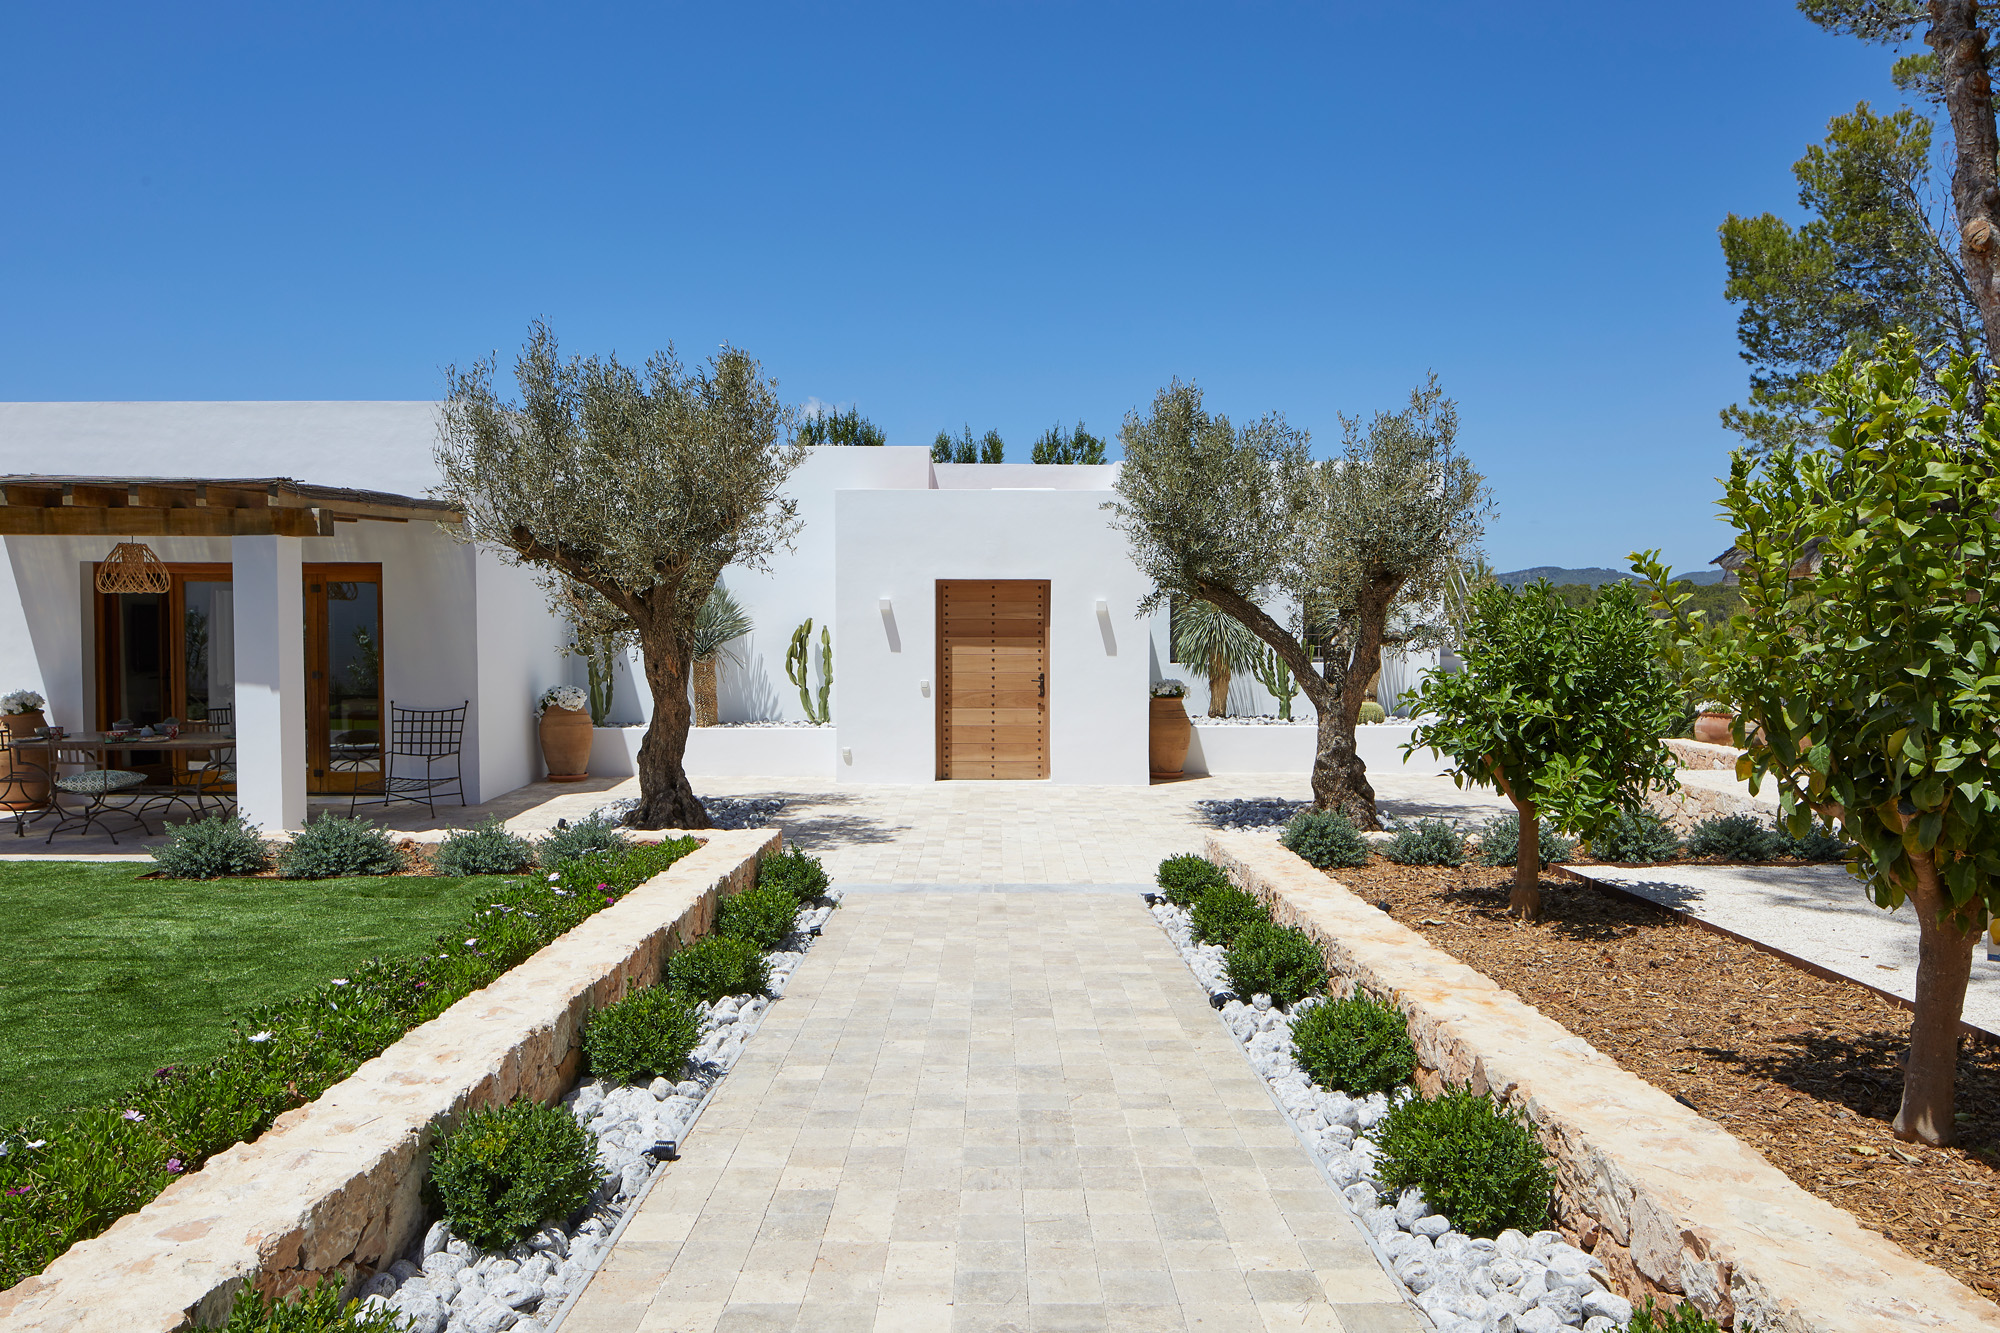 Driveway Nova Forma - luxury and contemporary architecture design studio in Ibiza